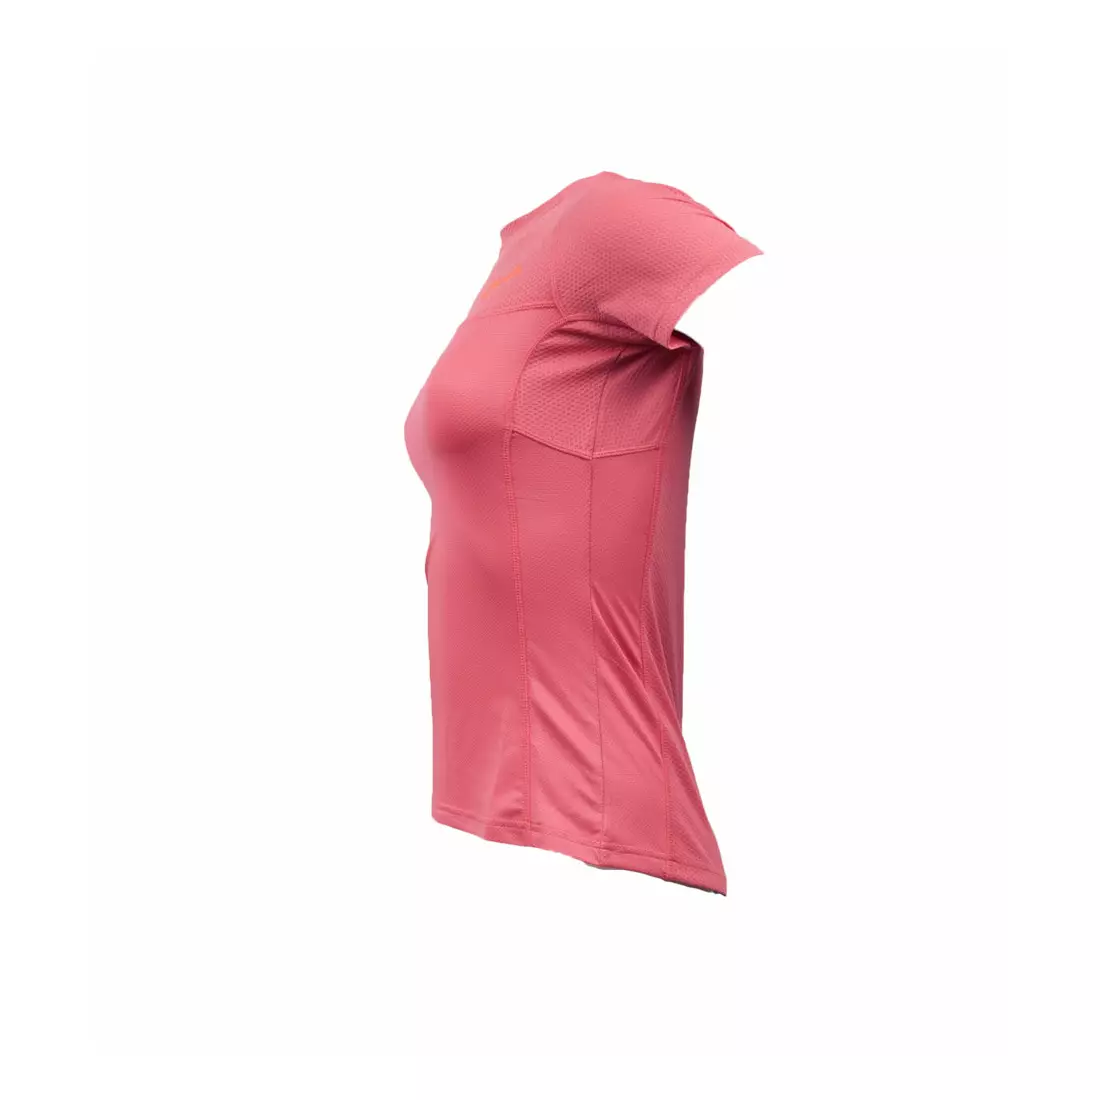 ROGELLI RUN SIRA – Damen-Lauf-T-Shirt – Farbe: Dunkelrosa